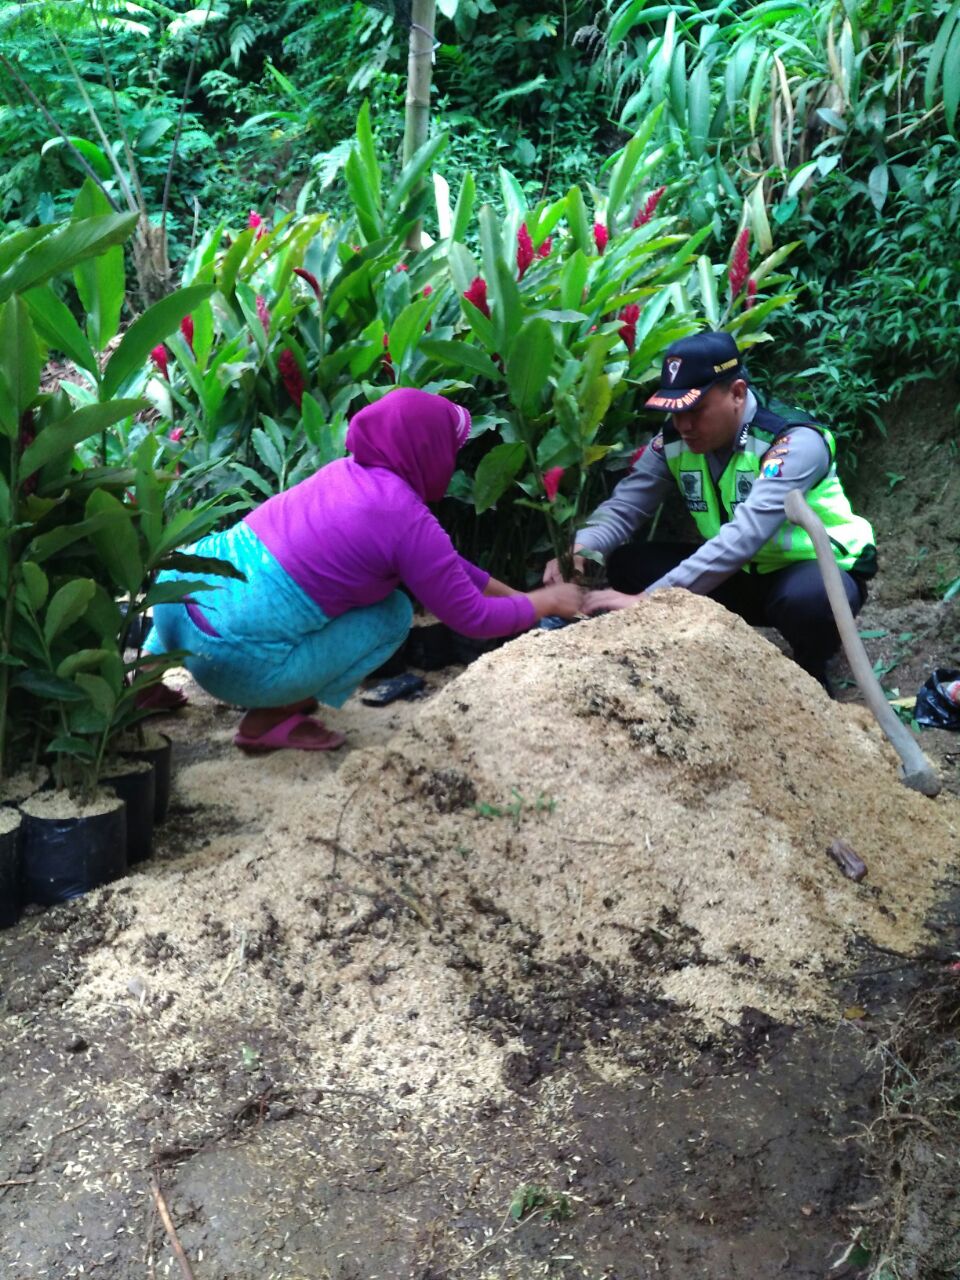 Anggota Bhabinkamtibmas Desa Sidodadi Polsek Ngantang Polres Batu belajar cara menanam bibit tanaman hias